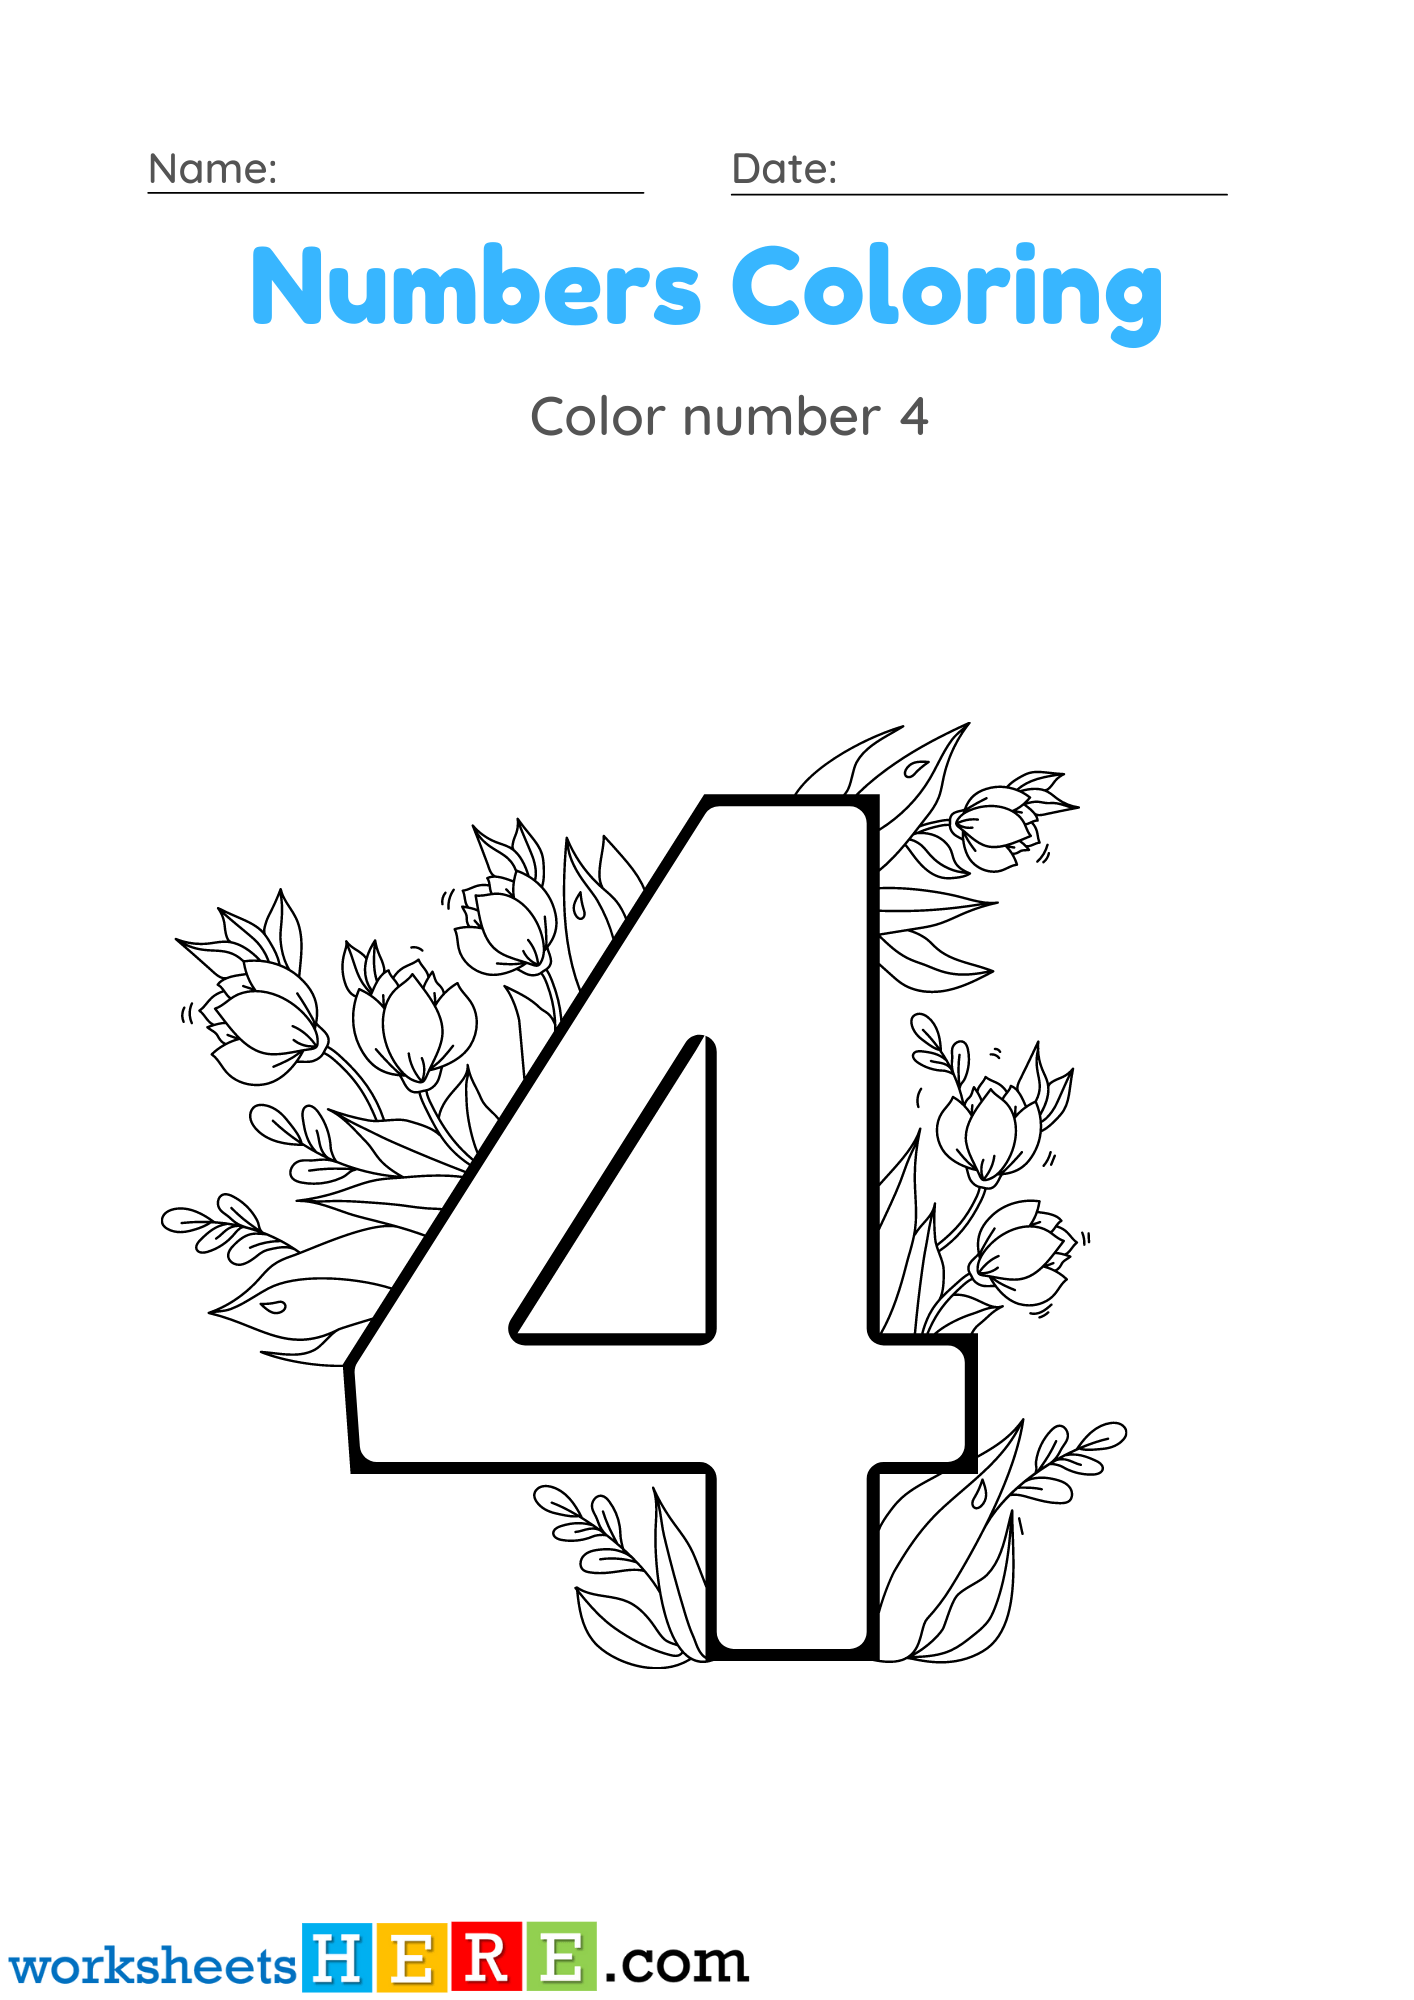 Numbers Coloring Activity, Color Number 4 PDF Worksheet For Kindergarten